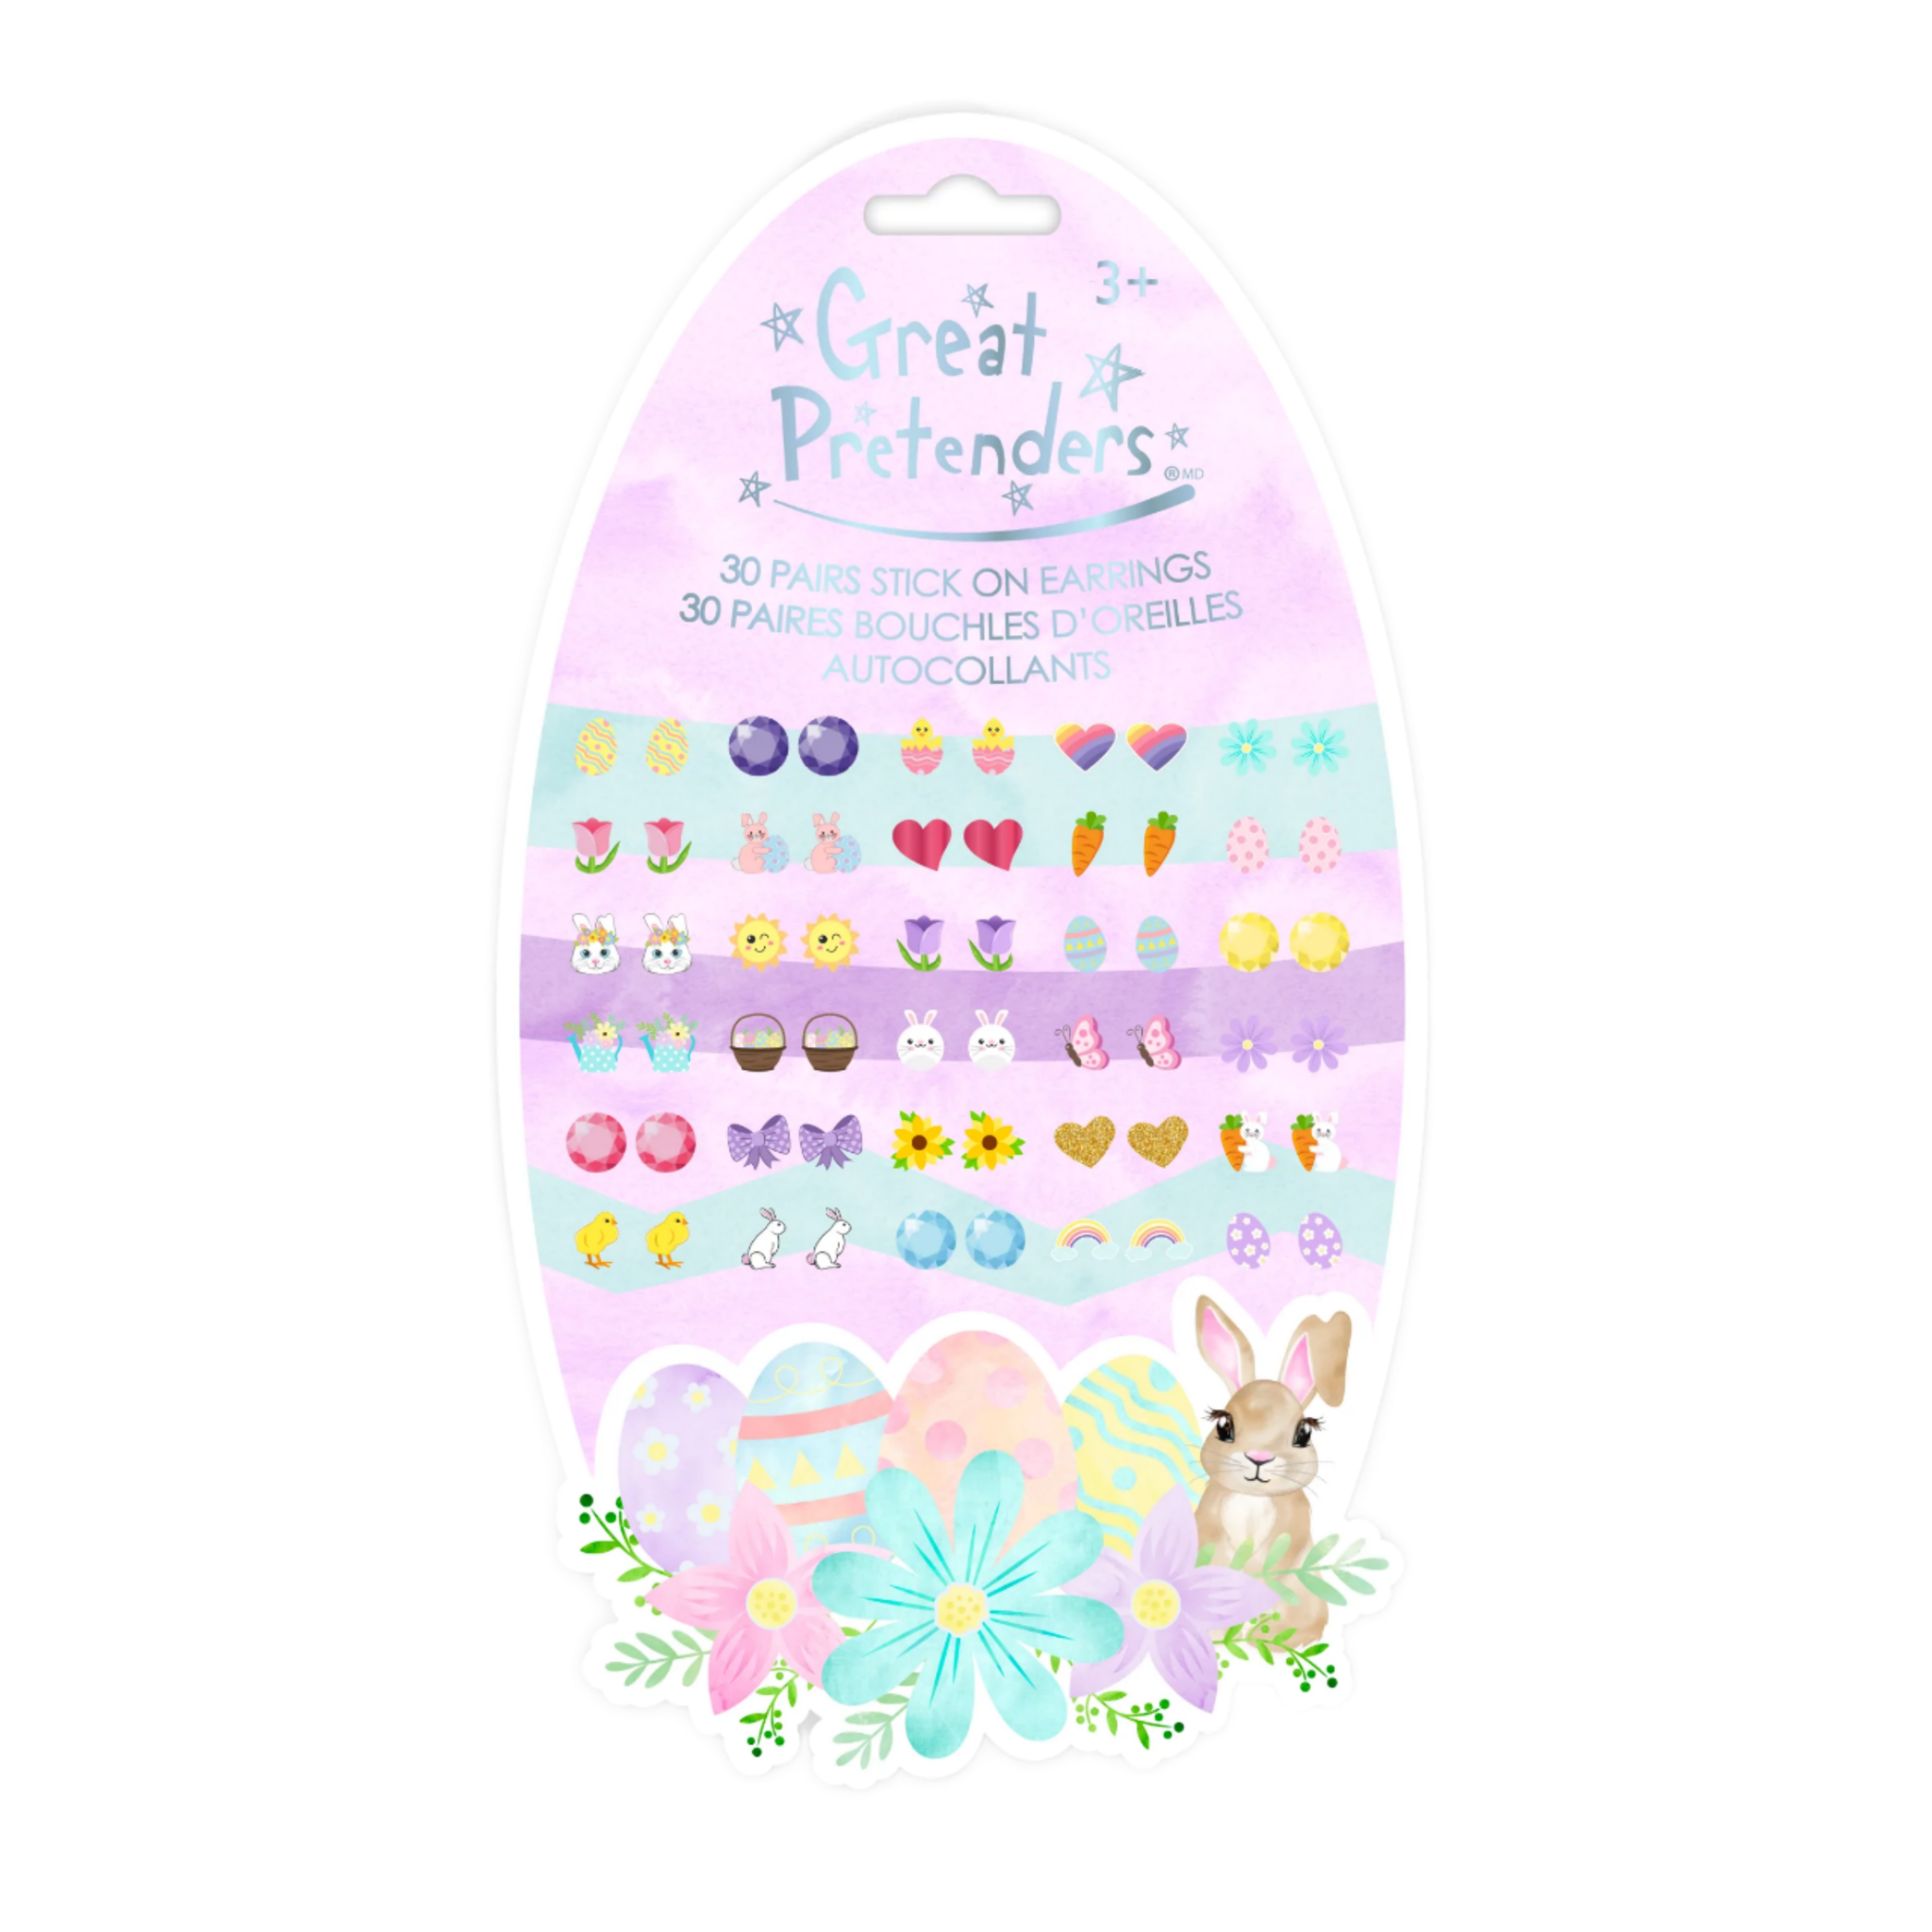 Great Pretenders - Easter Bunny Sticker Earrings